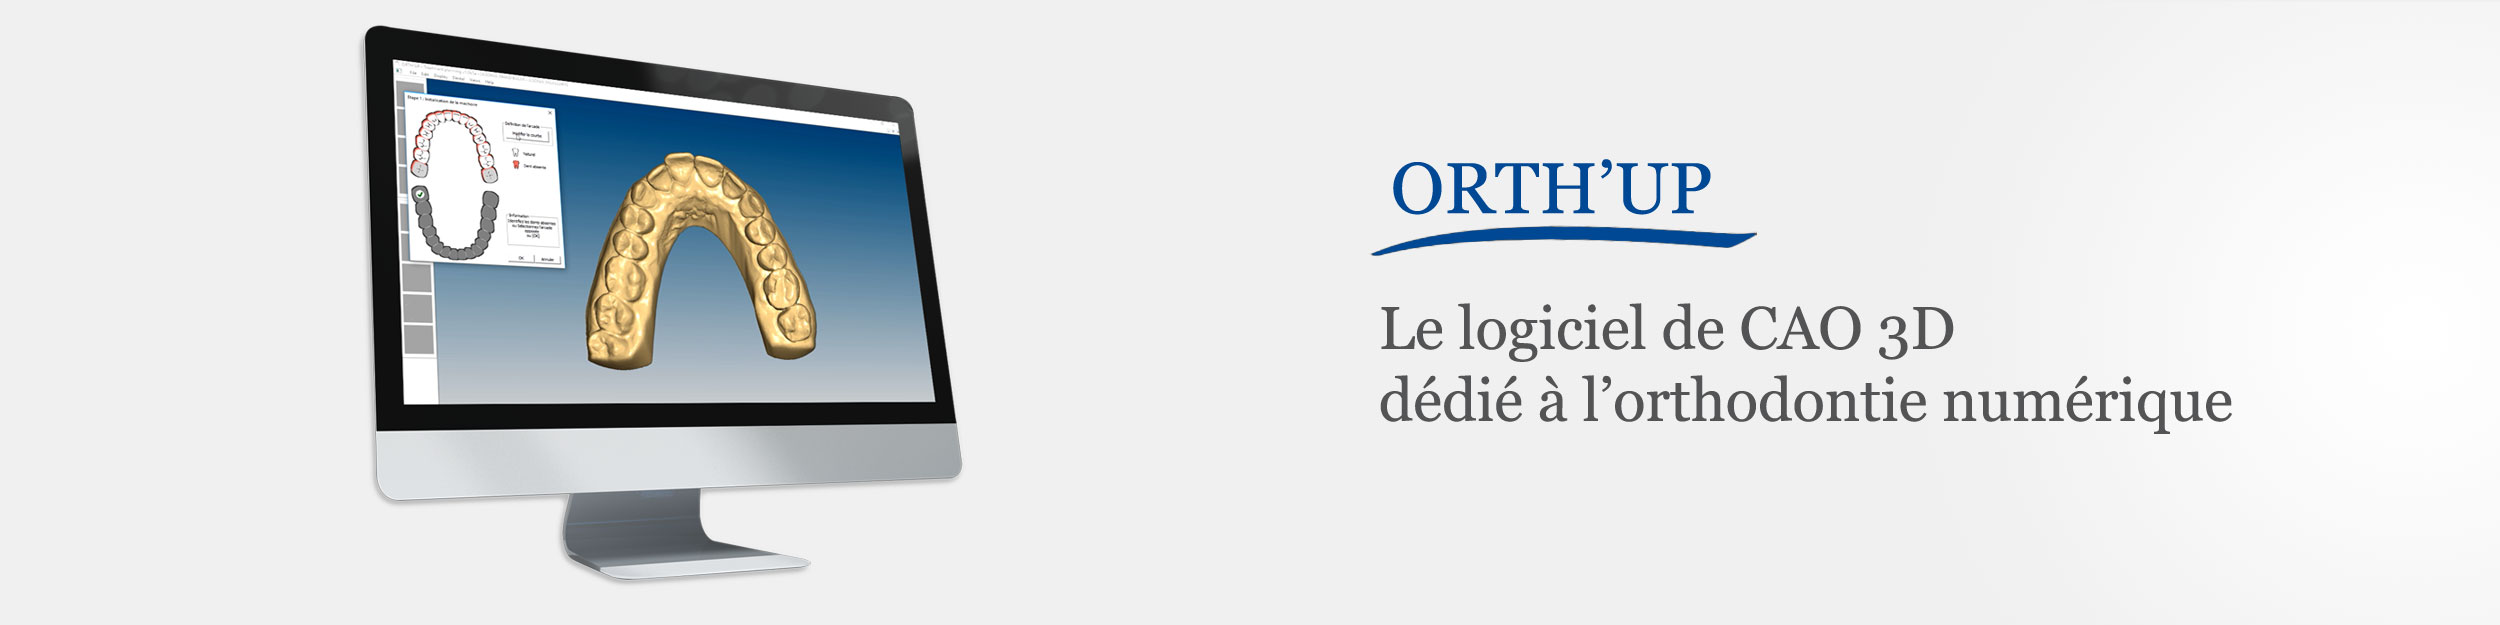 Partenaire ORTH'UP : Le logiciel de CFAO 3D dédié à l'orthodontie numérique.